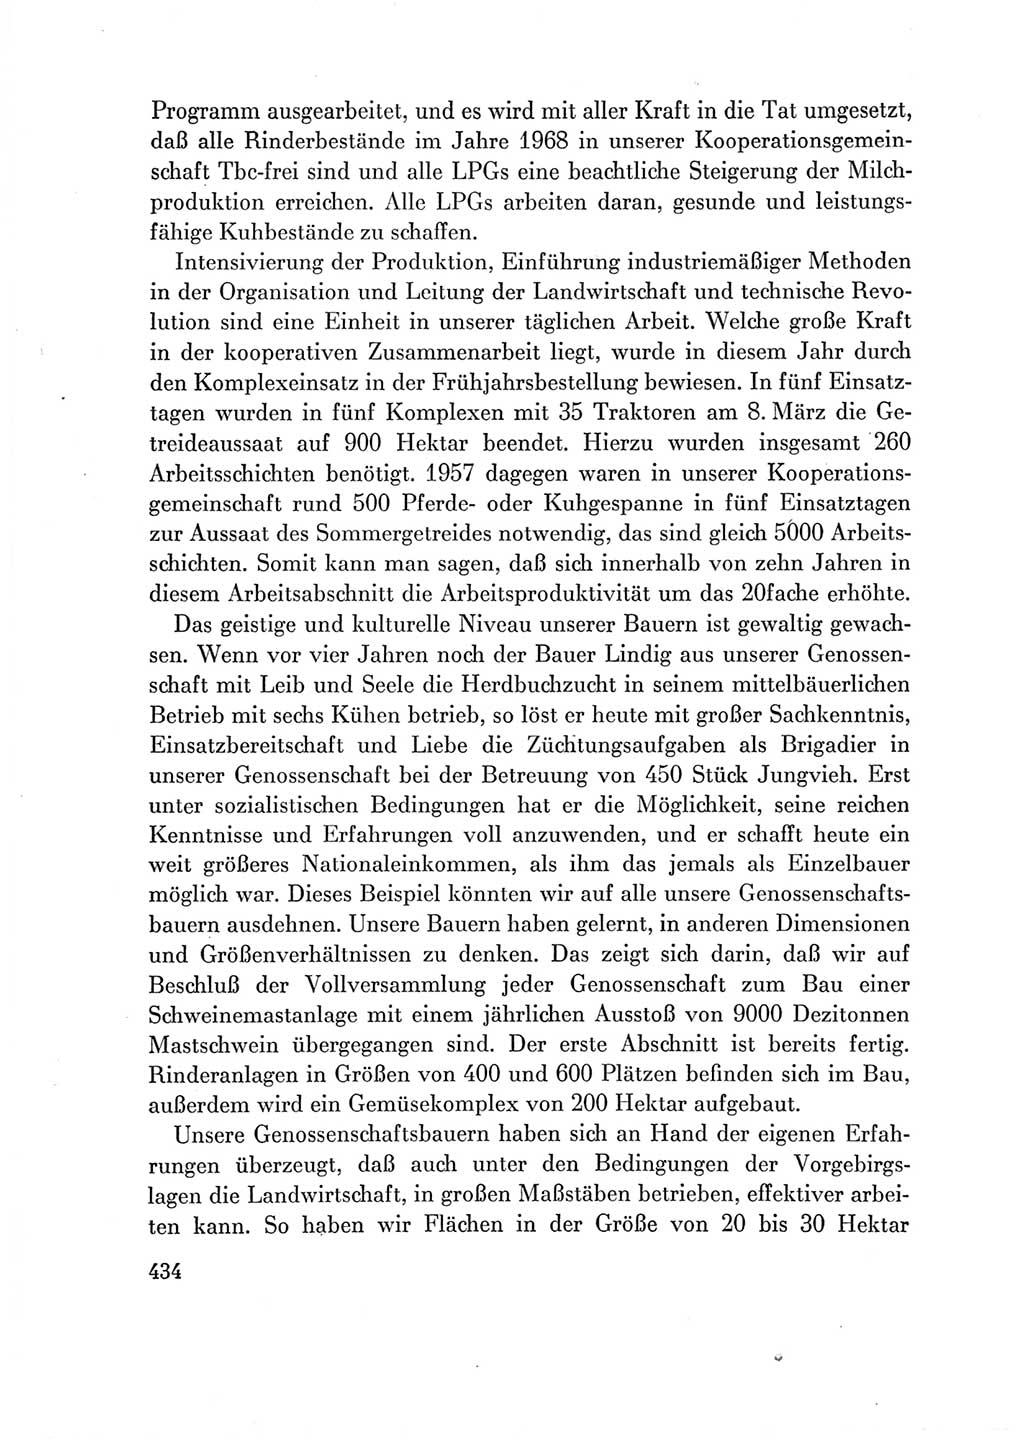 Protokoll der Verhandlungen des Ⅶ. Parteitages der Sozialistischen Einheitspartei Deutschlands (SED) [Deutsche Demokratische Republik (DDR)] 1967, Band Ⅲ, Seite 434 (Prot. Verh. Ⅶ. PT SED DDR 1967, Bd. Ⅲ, S. 434)